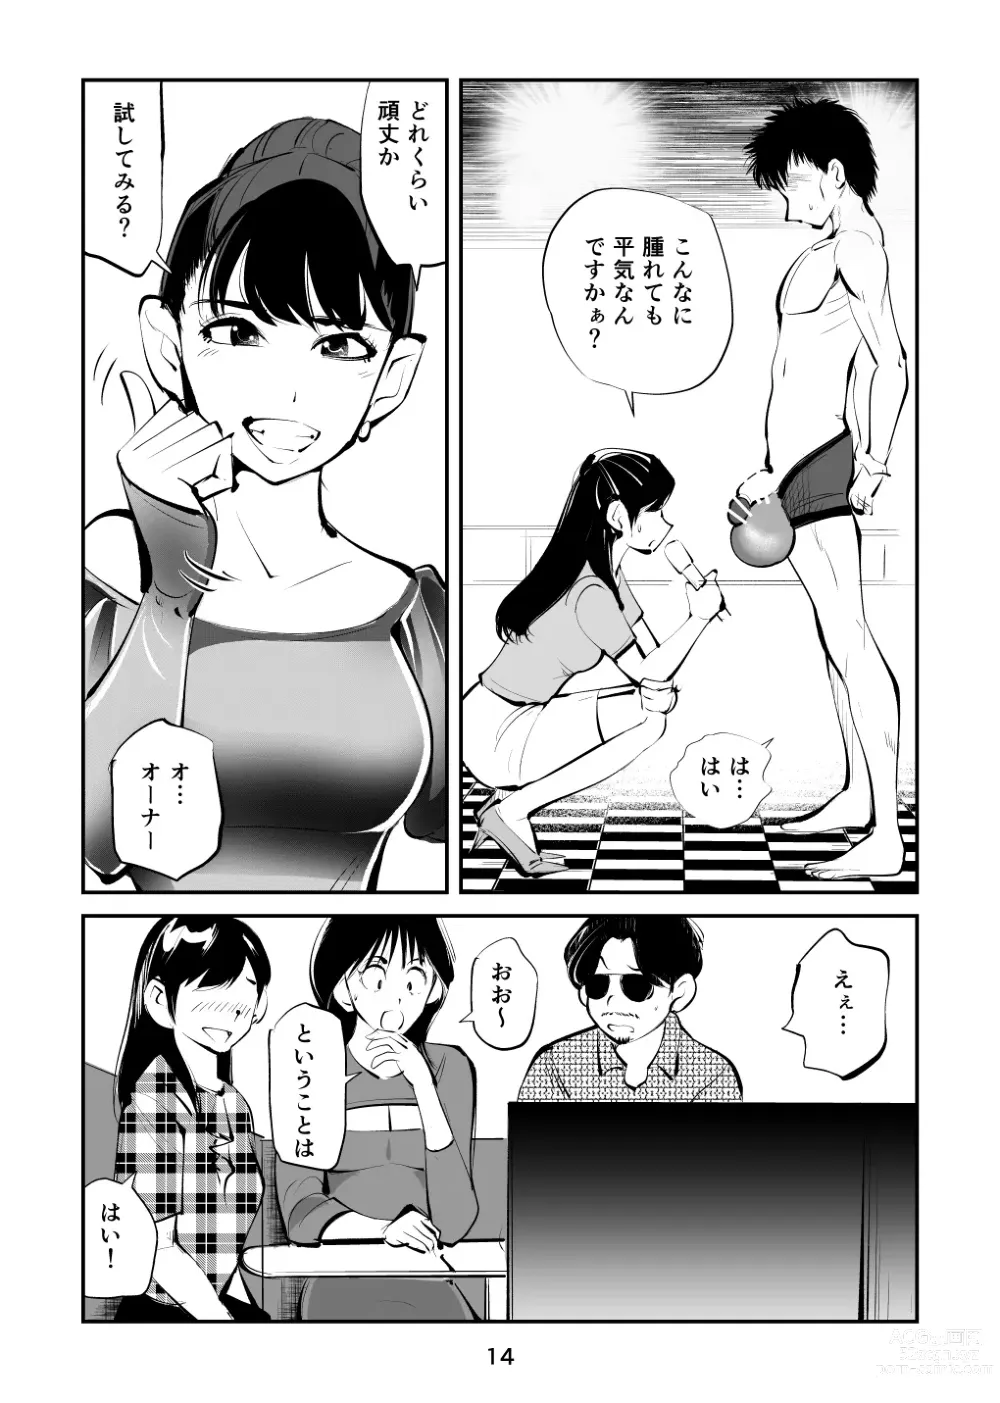 Page 14 of doujinshi Kintama o tsubushita joshi-ana